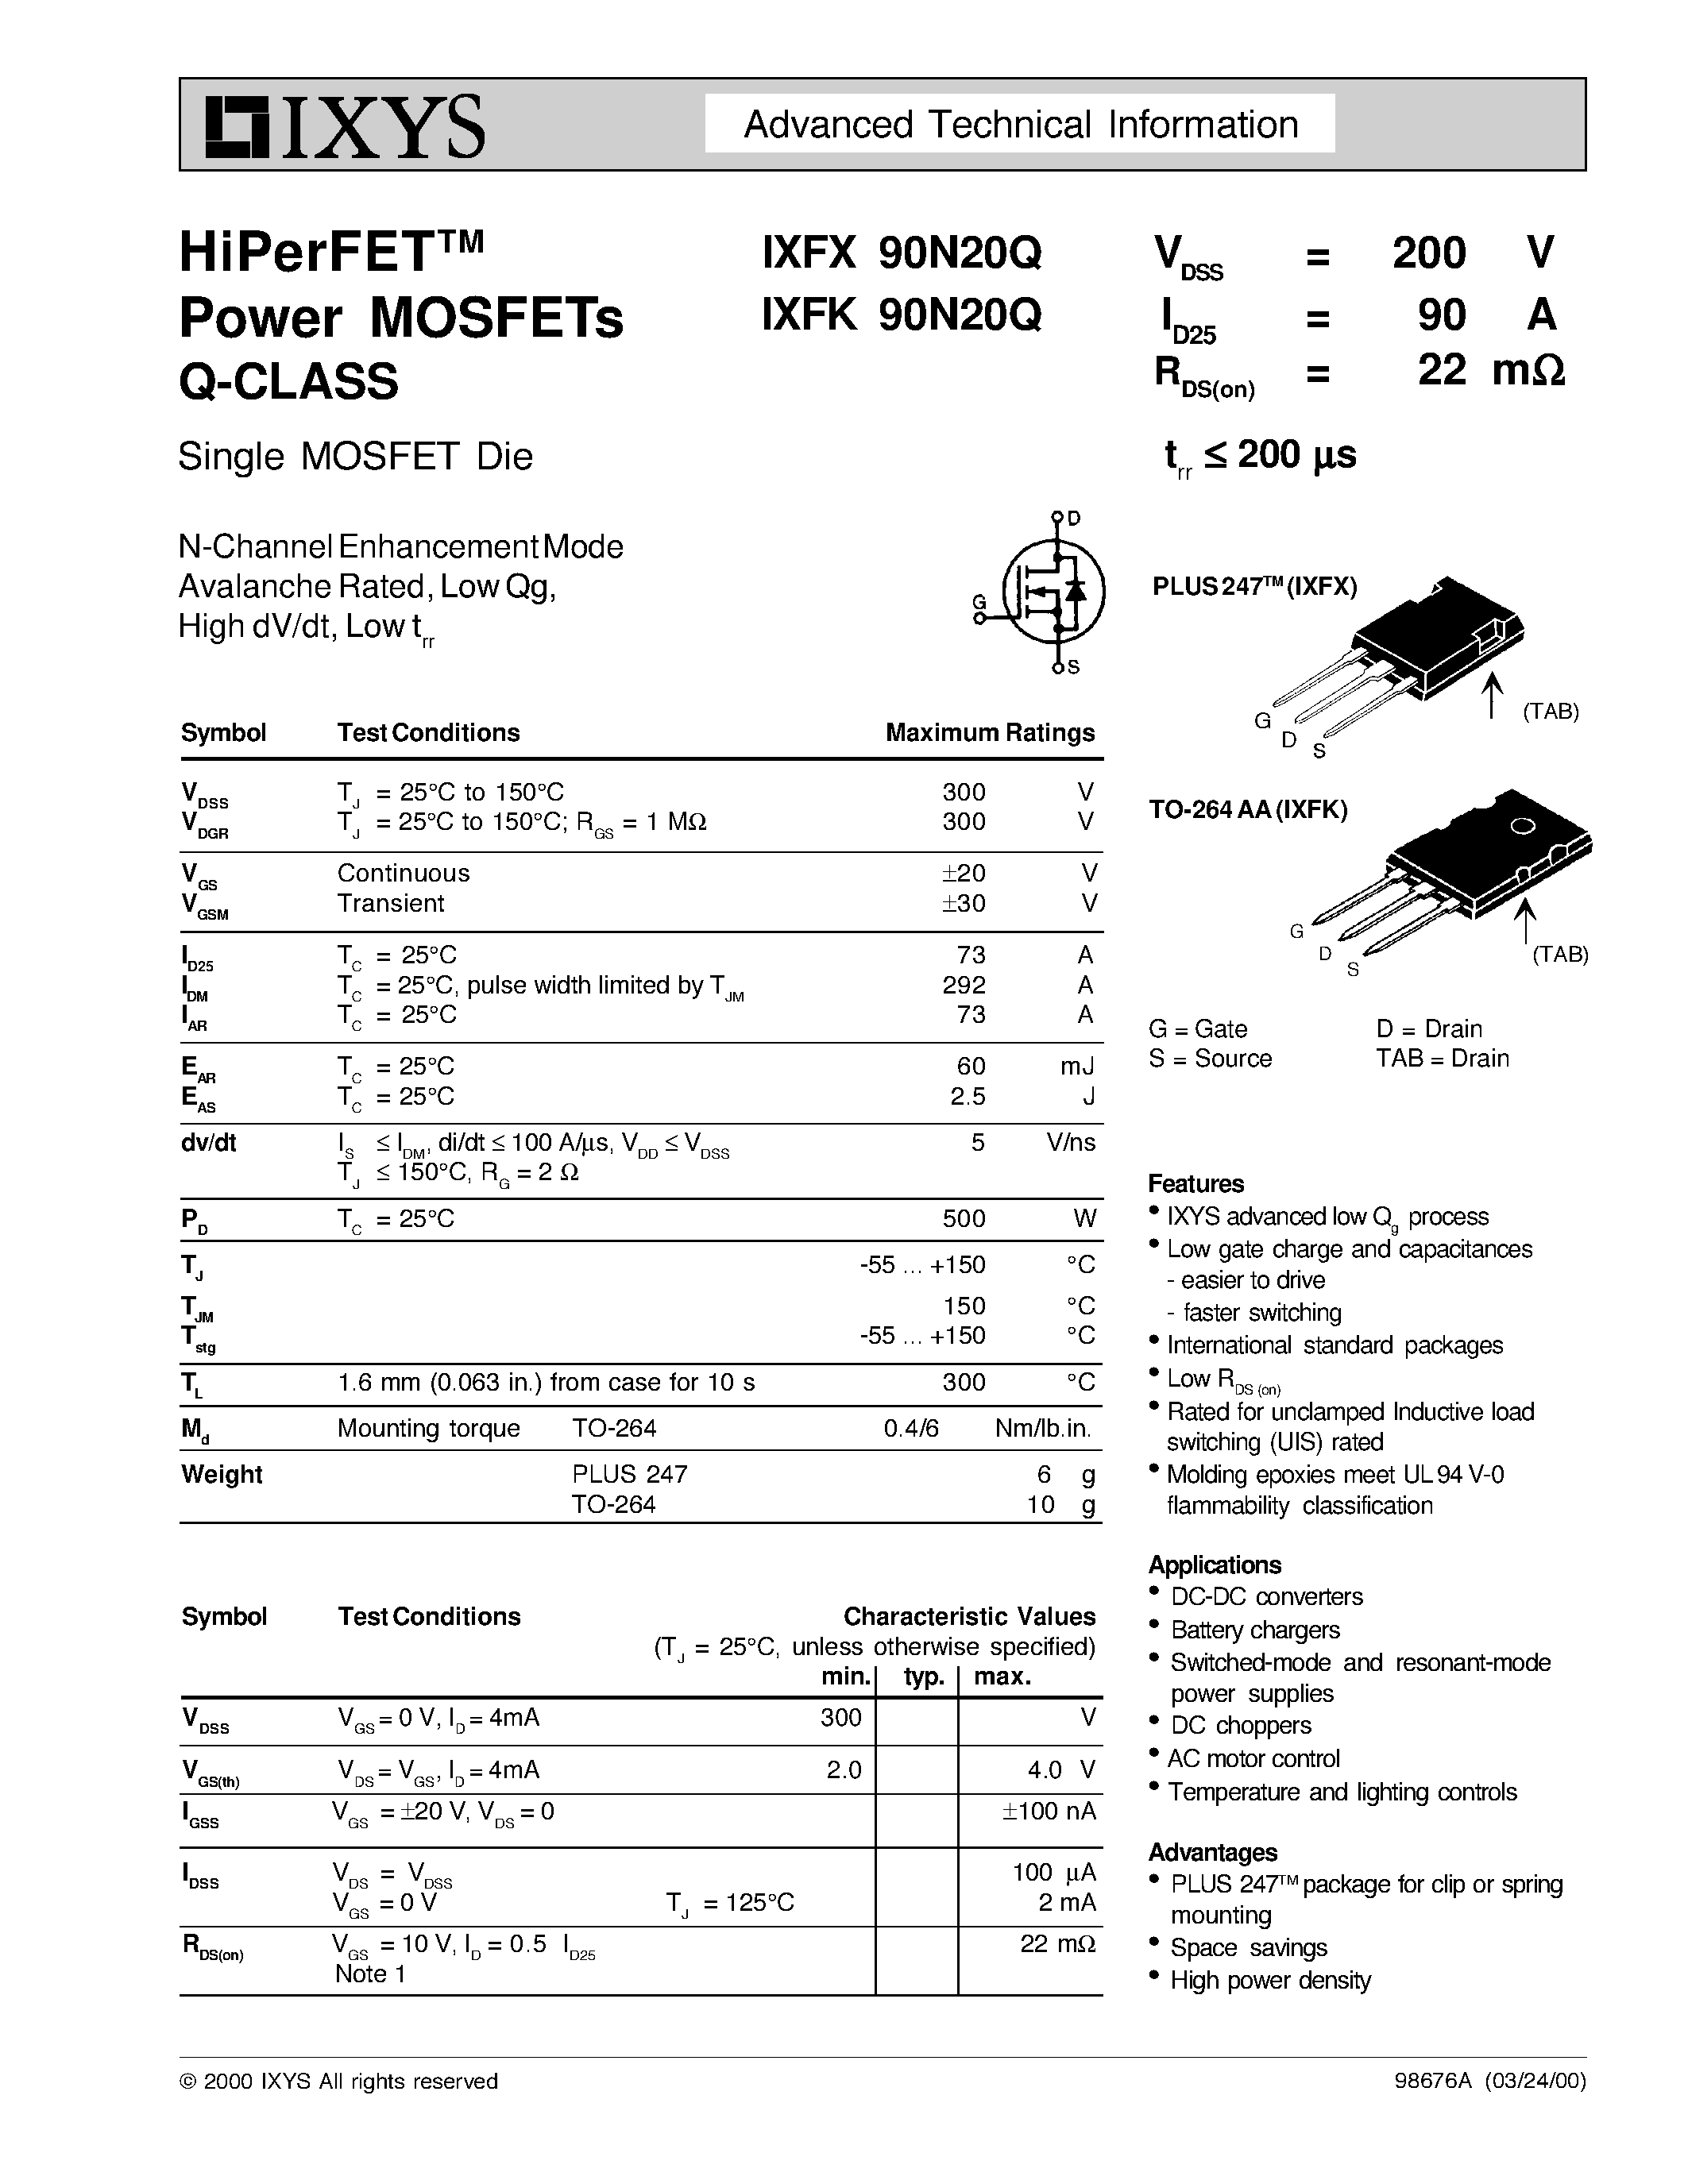 Даташит IXFK90N20Q - HiPerFETTM Power MOSFETs Q-CLASS страница 1